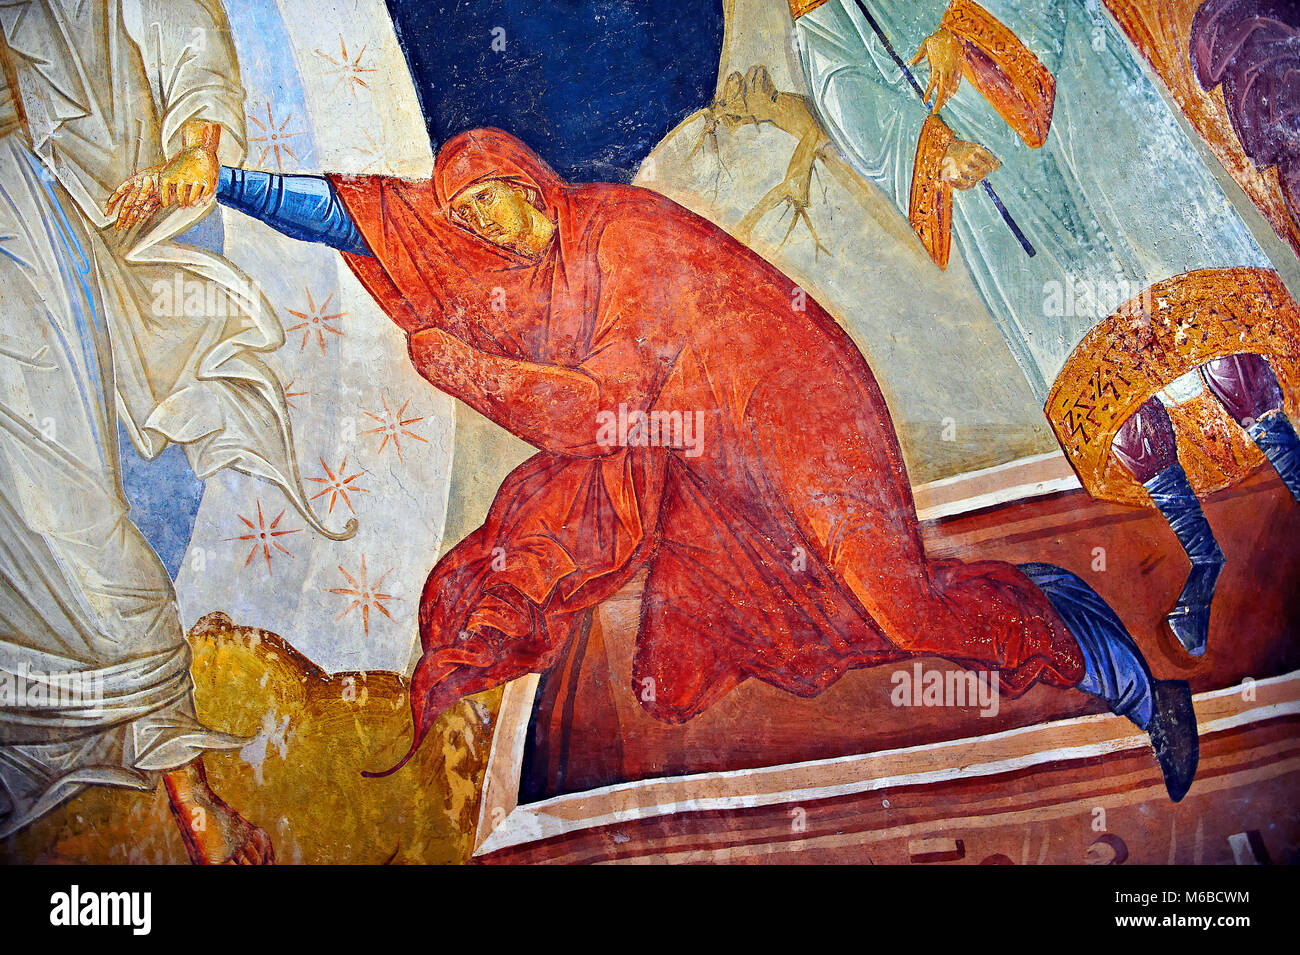 Das 11. Jahrhundert byzantinischen Kirche des Heiligen Erlösers in Chora und seine Anastasis parecclesion Fresko in der Kapelle. Christus ist dargestellt E speichern Stockfoto